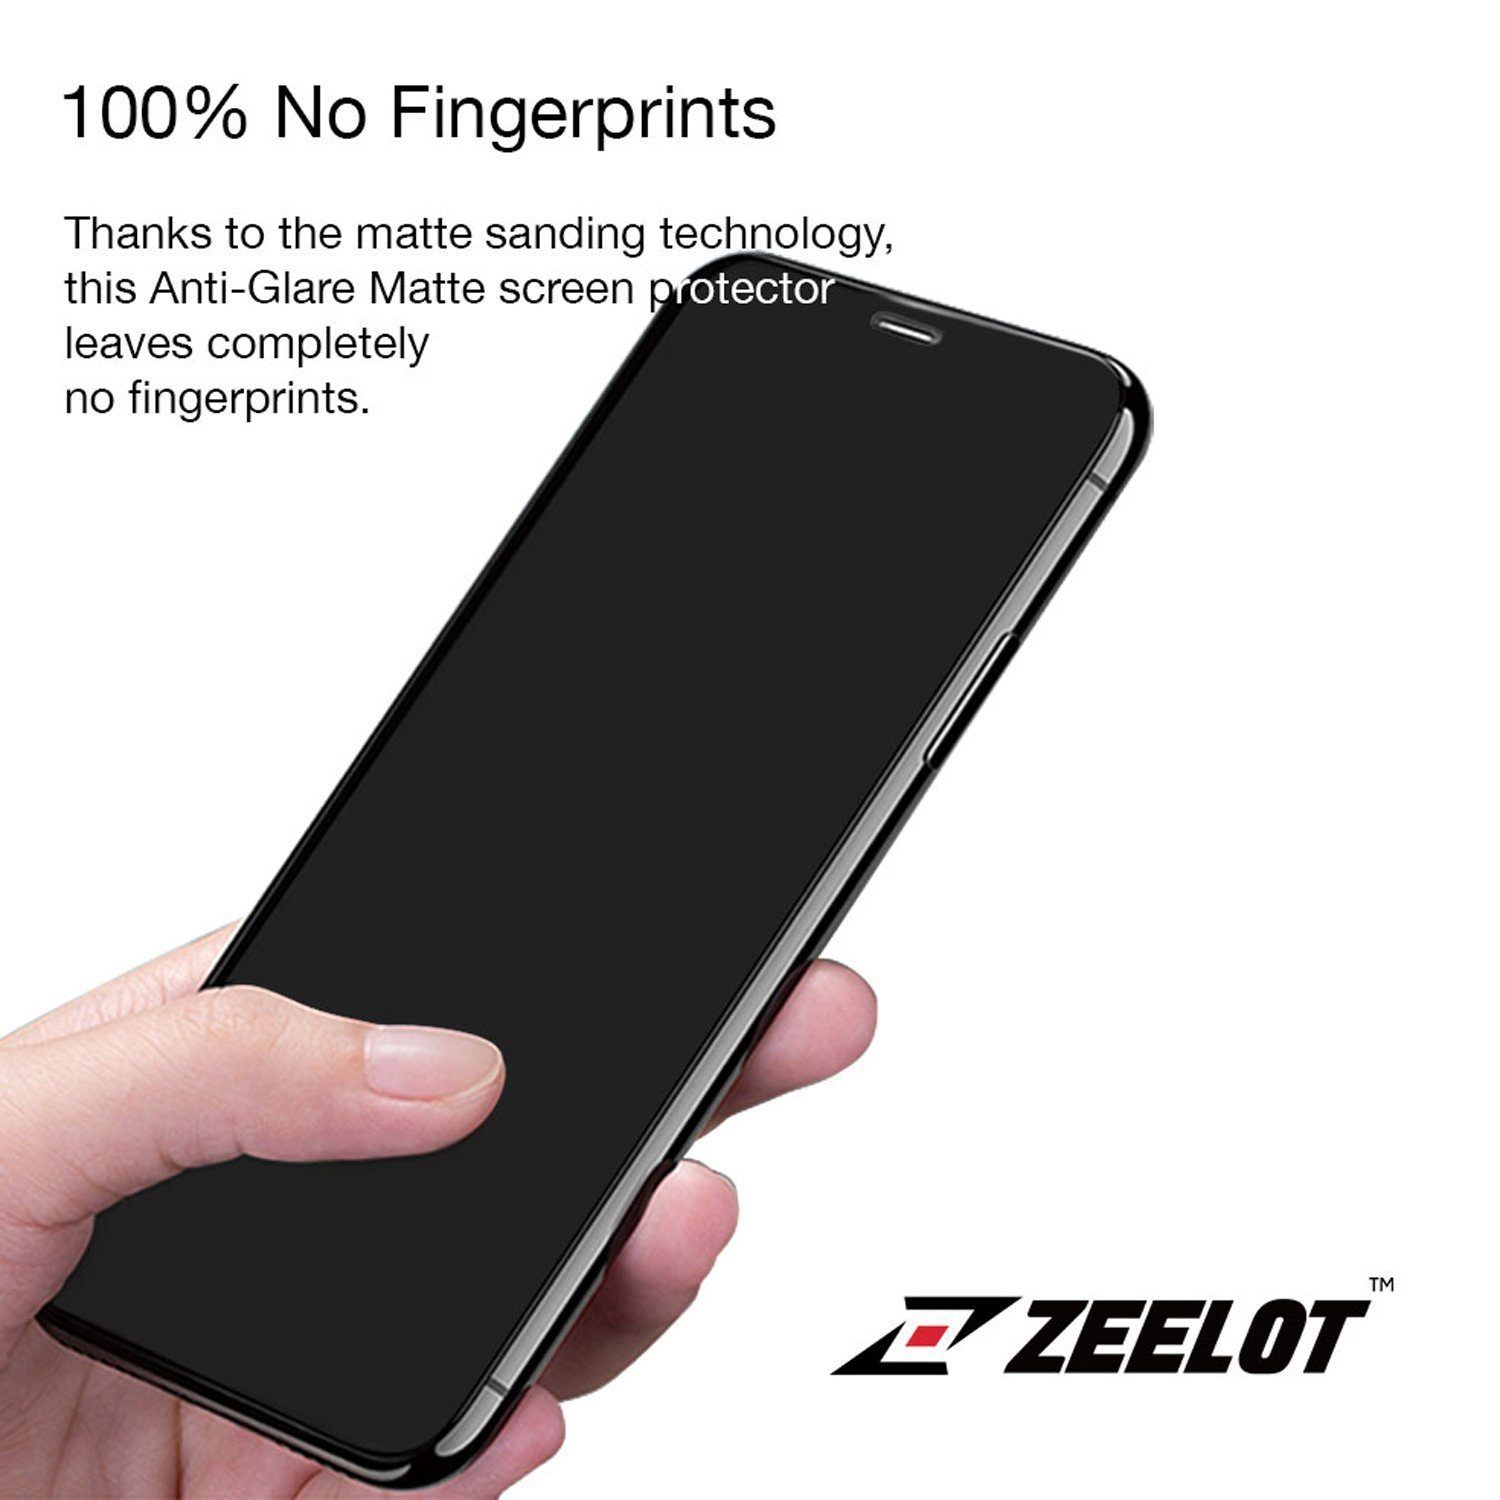 ZEELOT PureGlass 3D LOCA Tempered Glass Screen Protector for Huawei Mate 20 Pro (2018), Matte LOCA Tempered Glass ZEELOT 